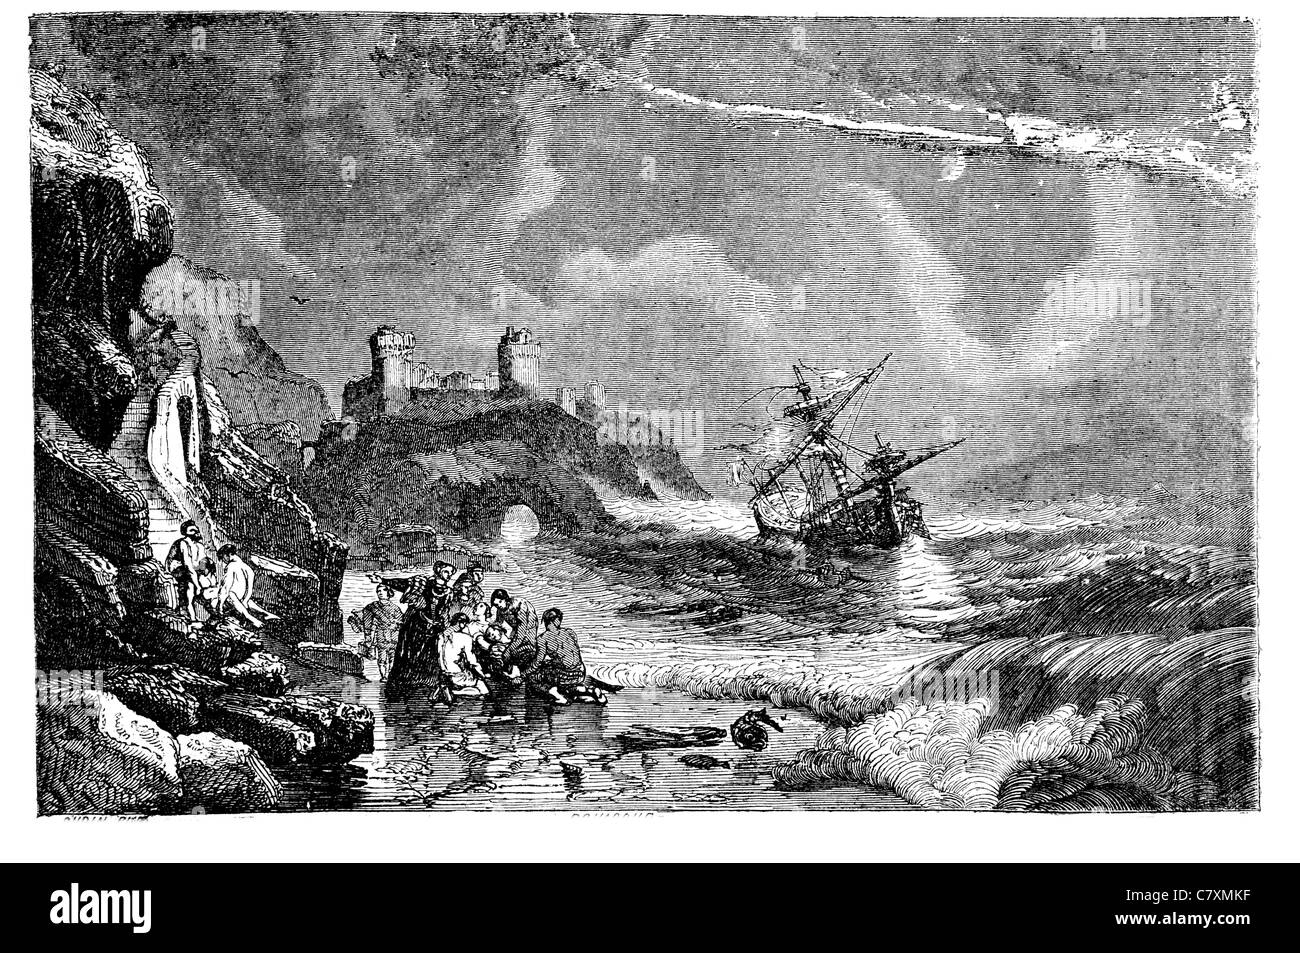 Wreck épave de navire irlandais Irlande Armada côte tempête naufrage château sauvé lancé au sauvetage sauvetage sauvé sauver hero Banque D'Images